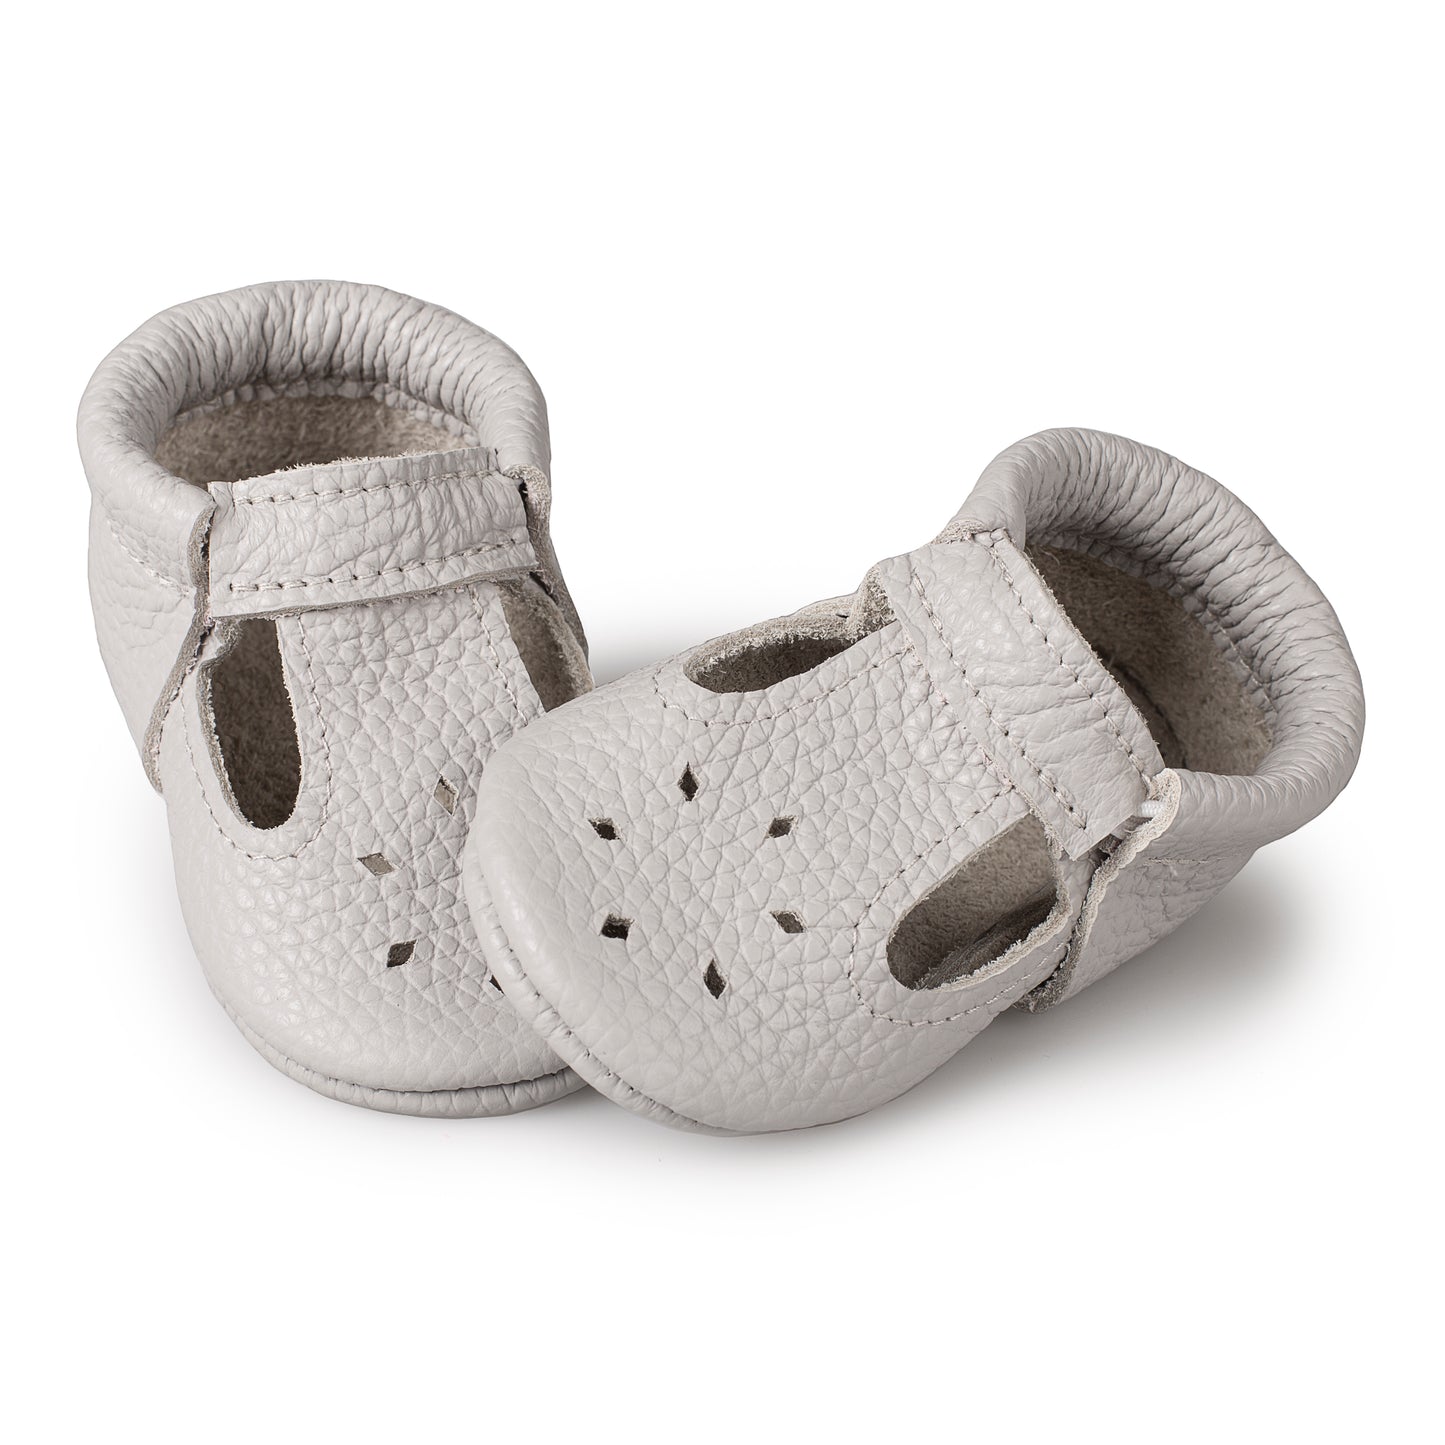 Durable Baby Footwear